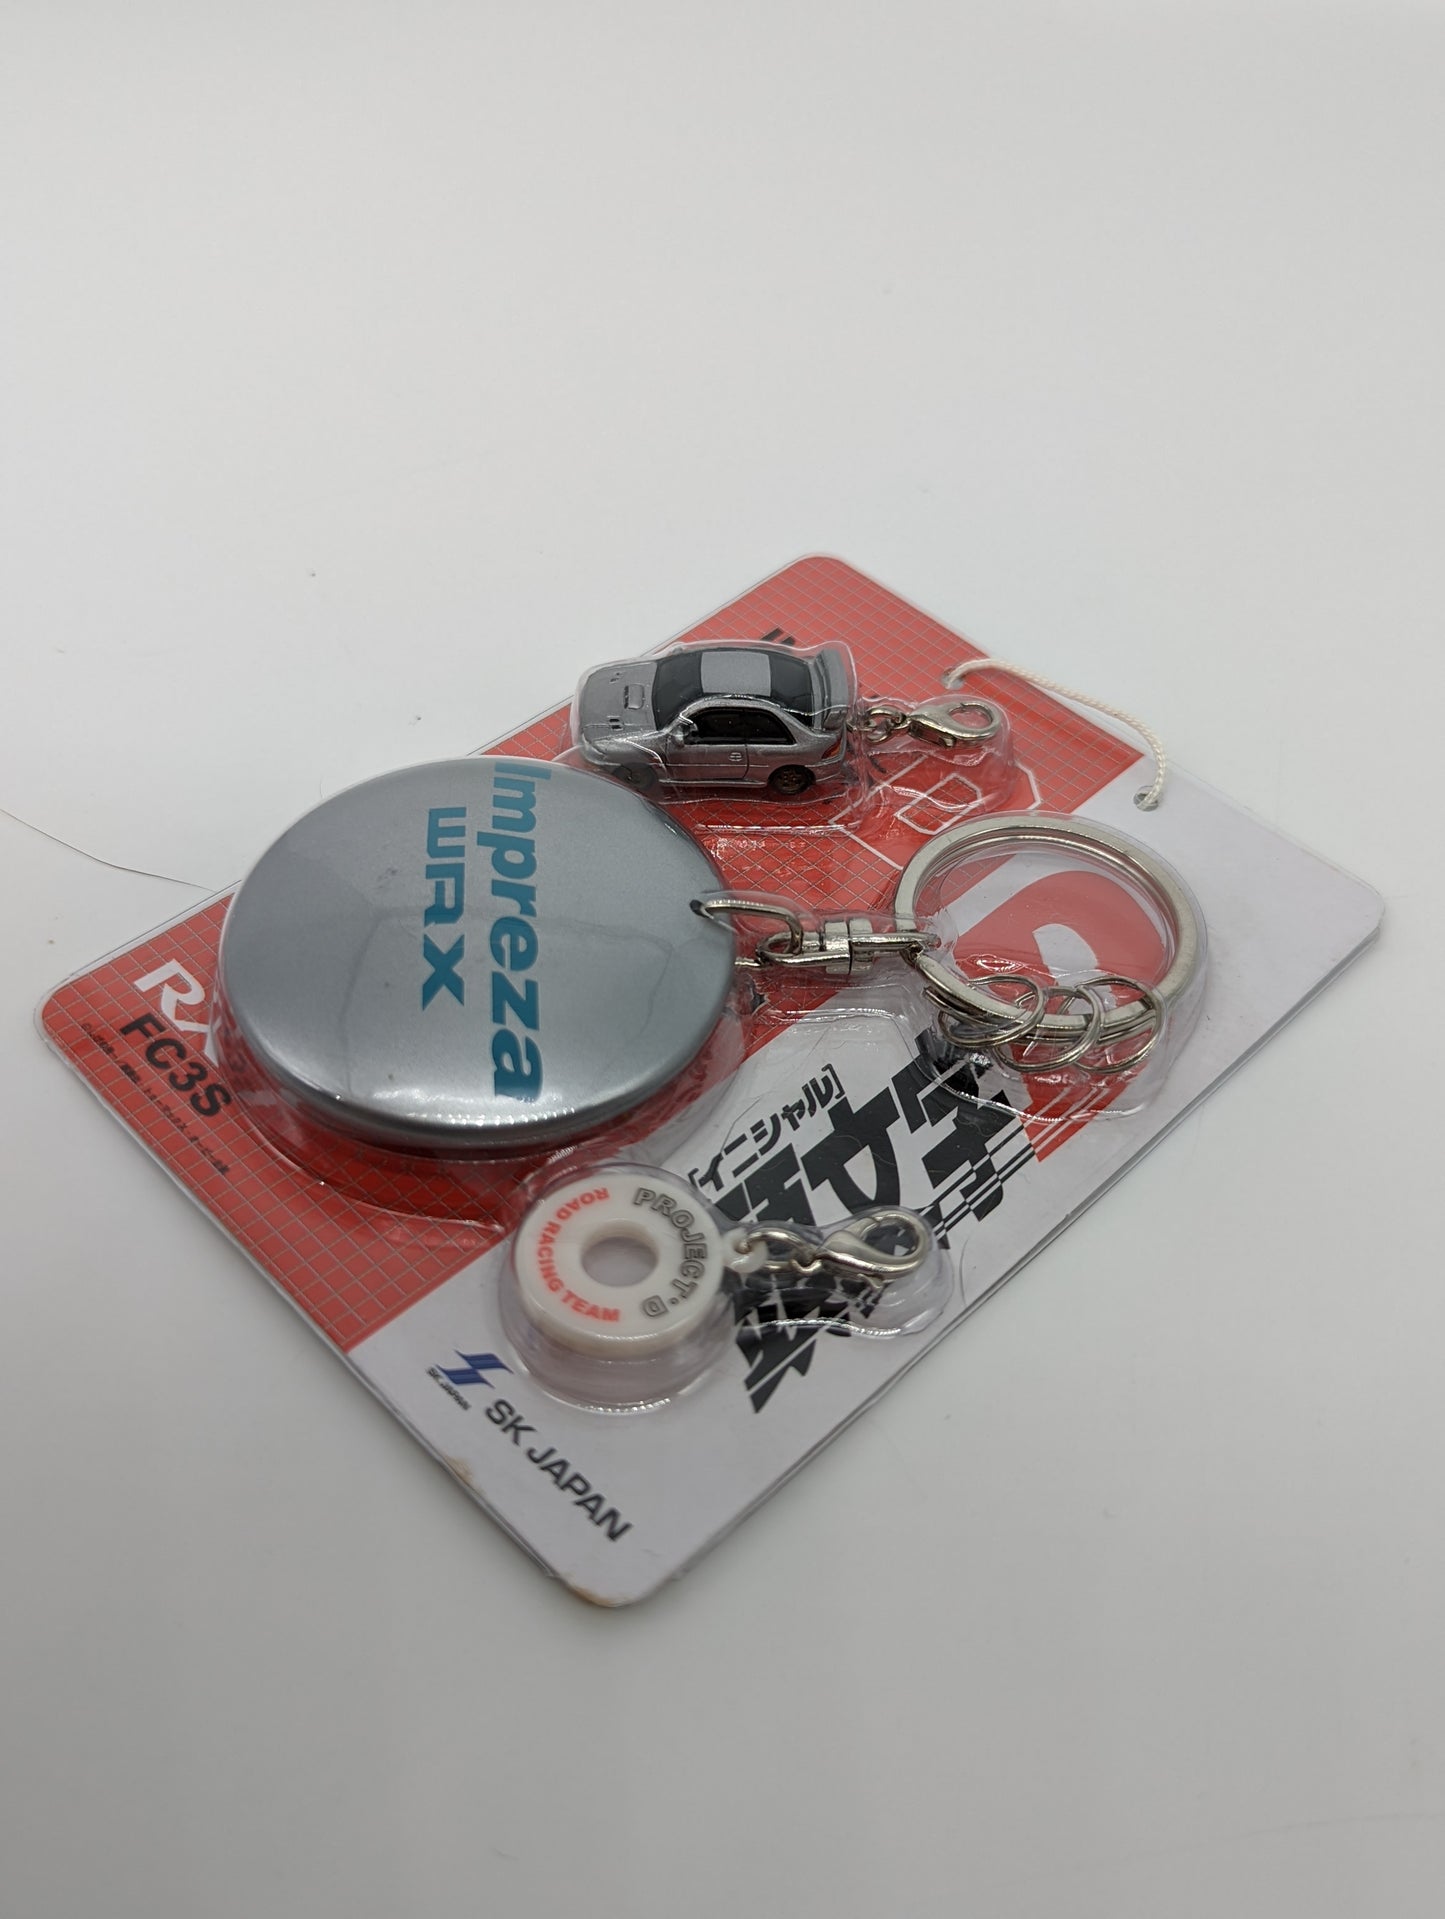 Impreza WRX  Initial D keychain